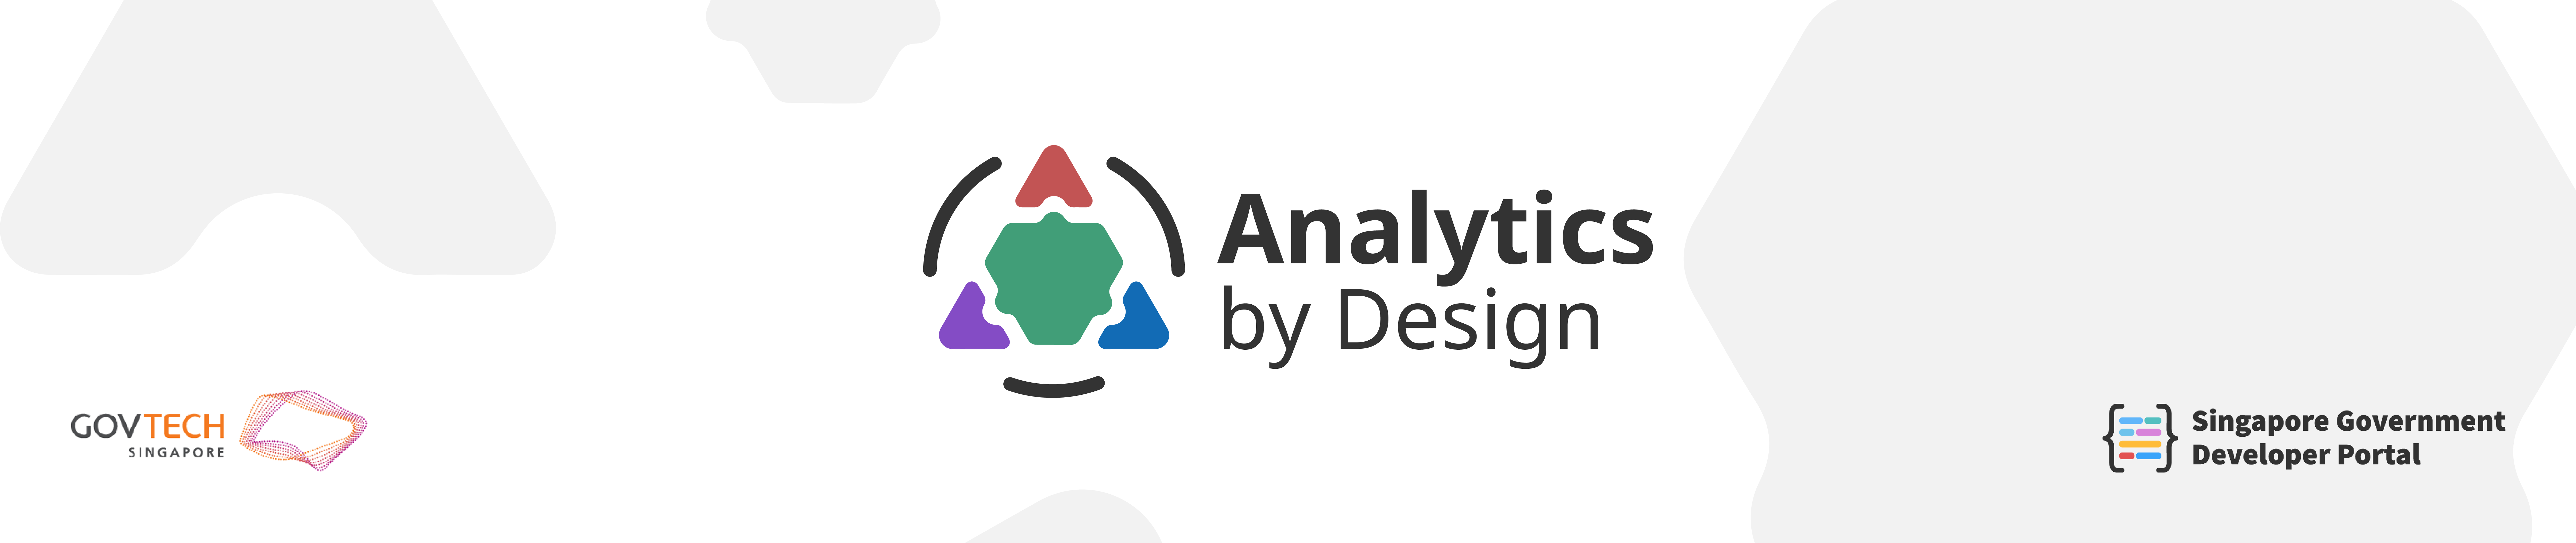 Analytics by Design header banner